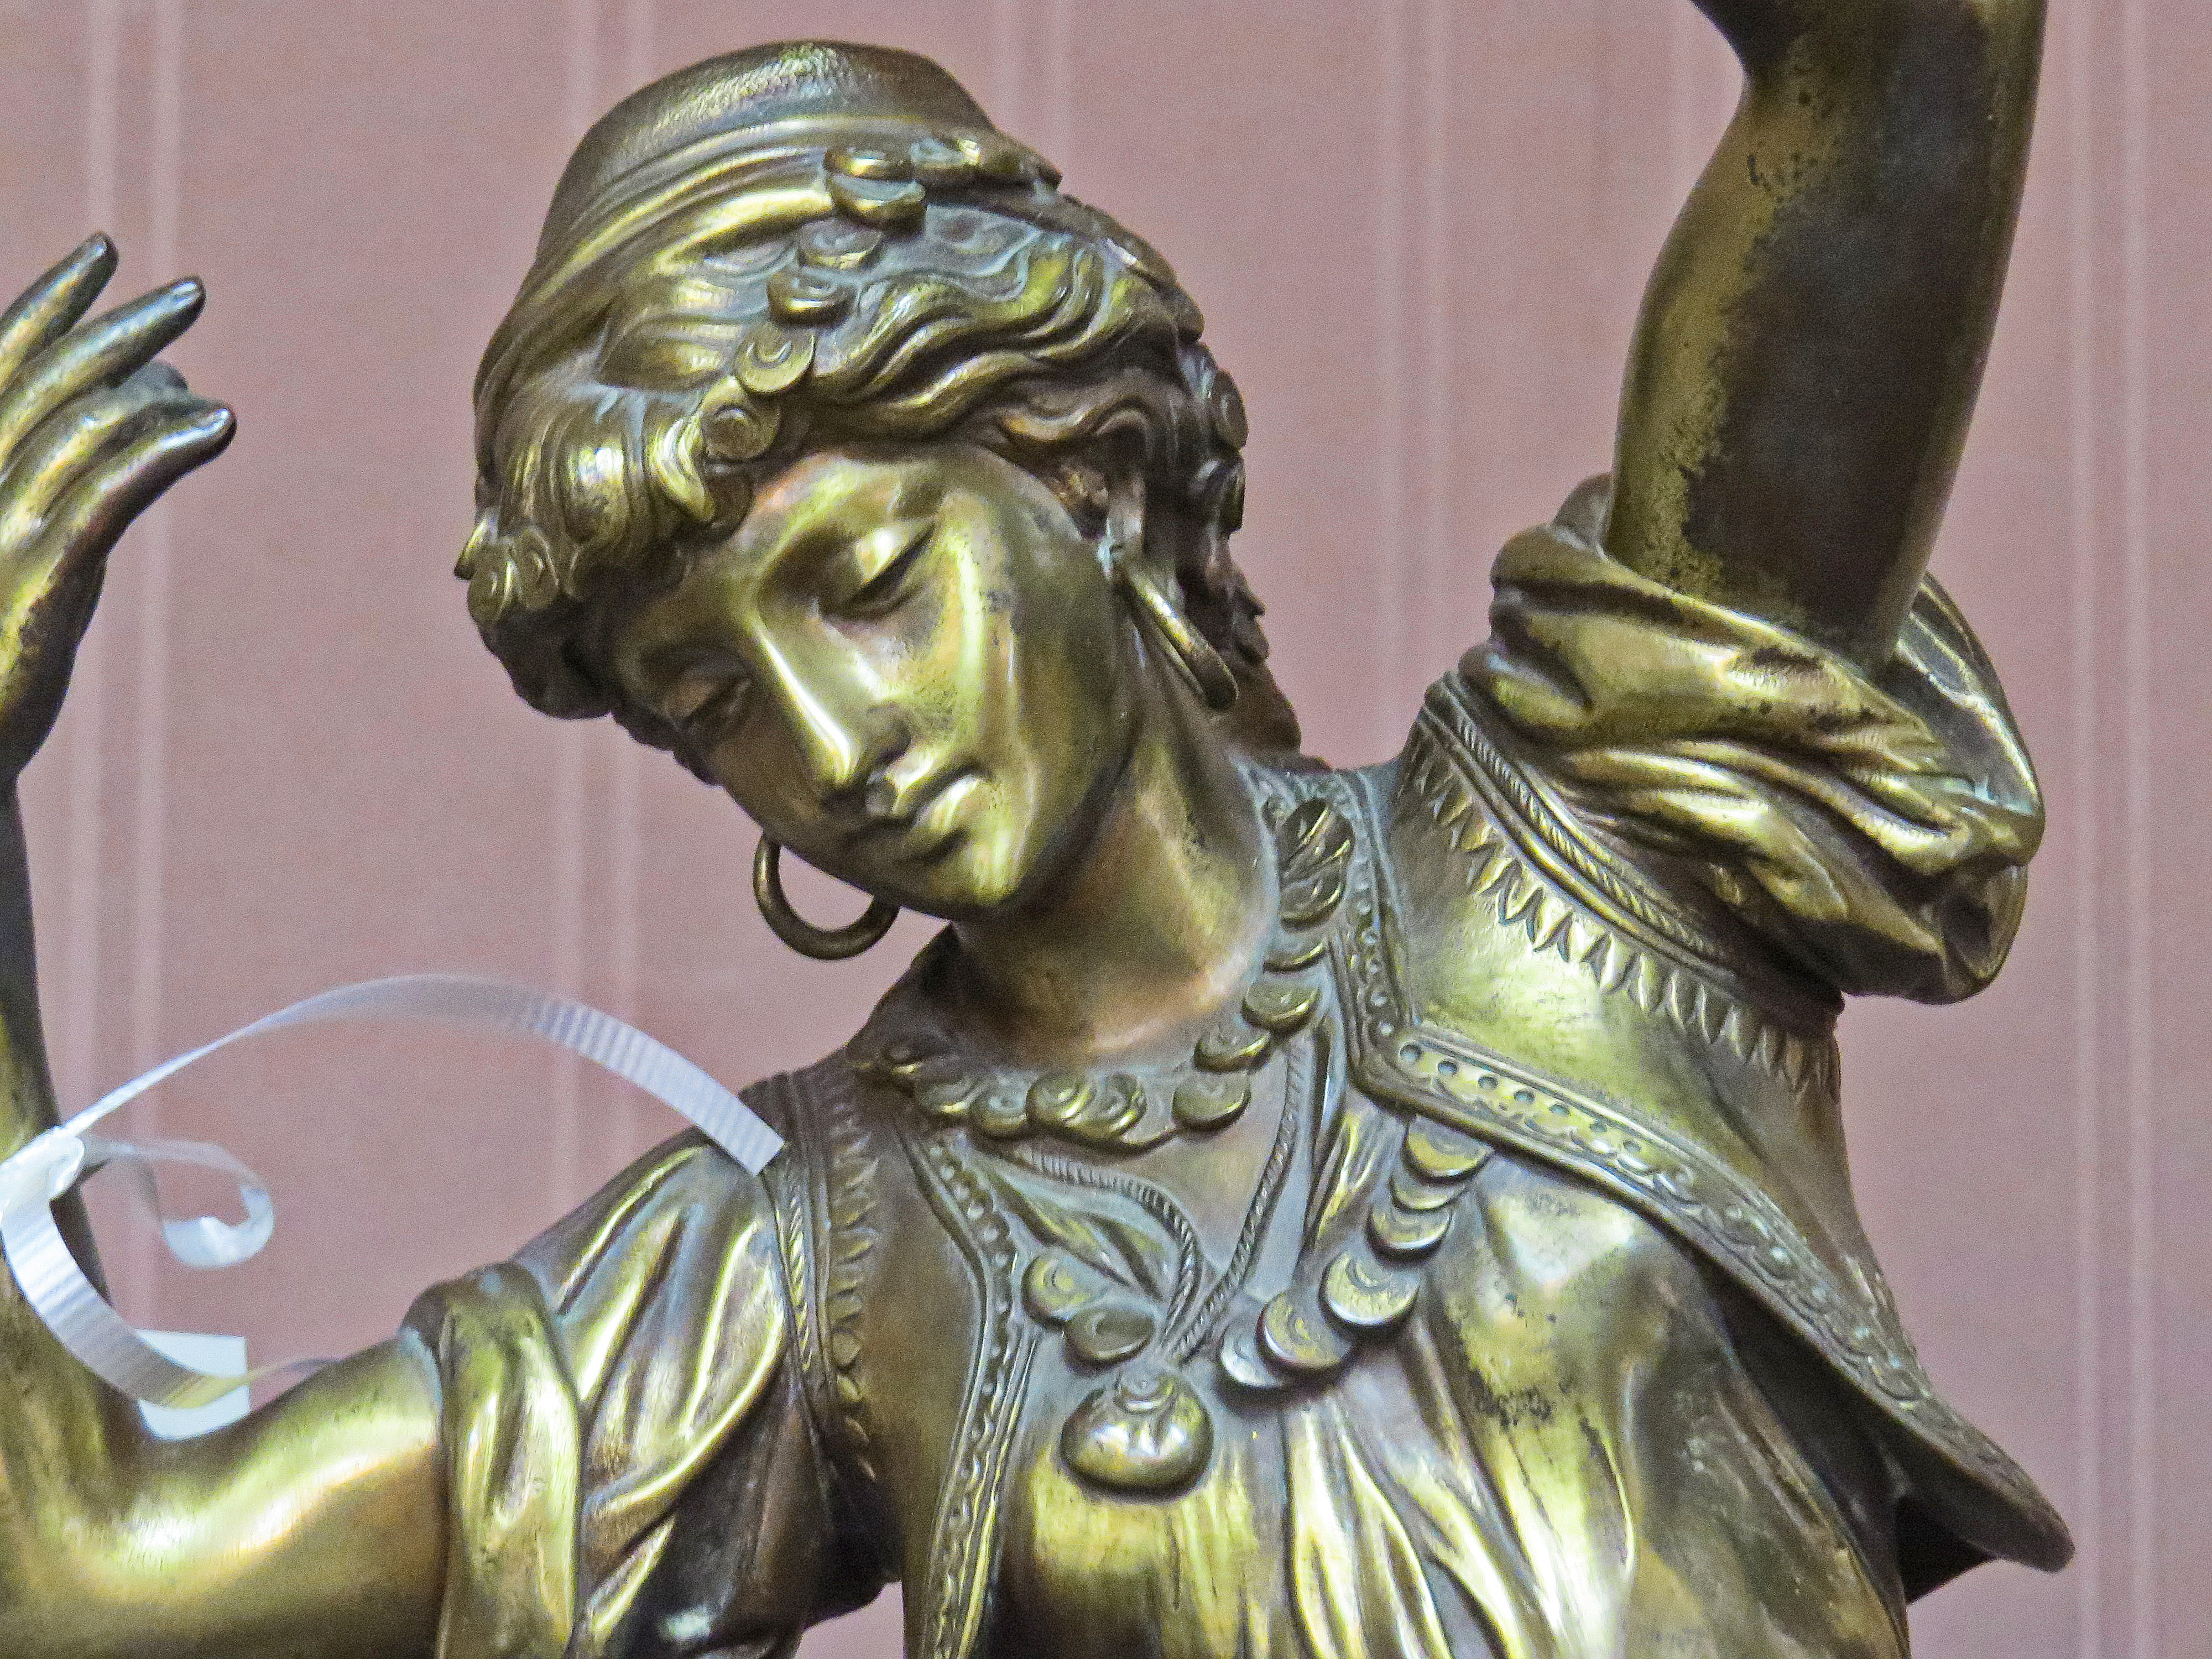 Bronze Statue of a Young Gypsy Woman, “Esmeralda” by Adrien Etienne Gaudez